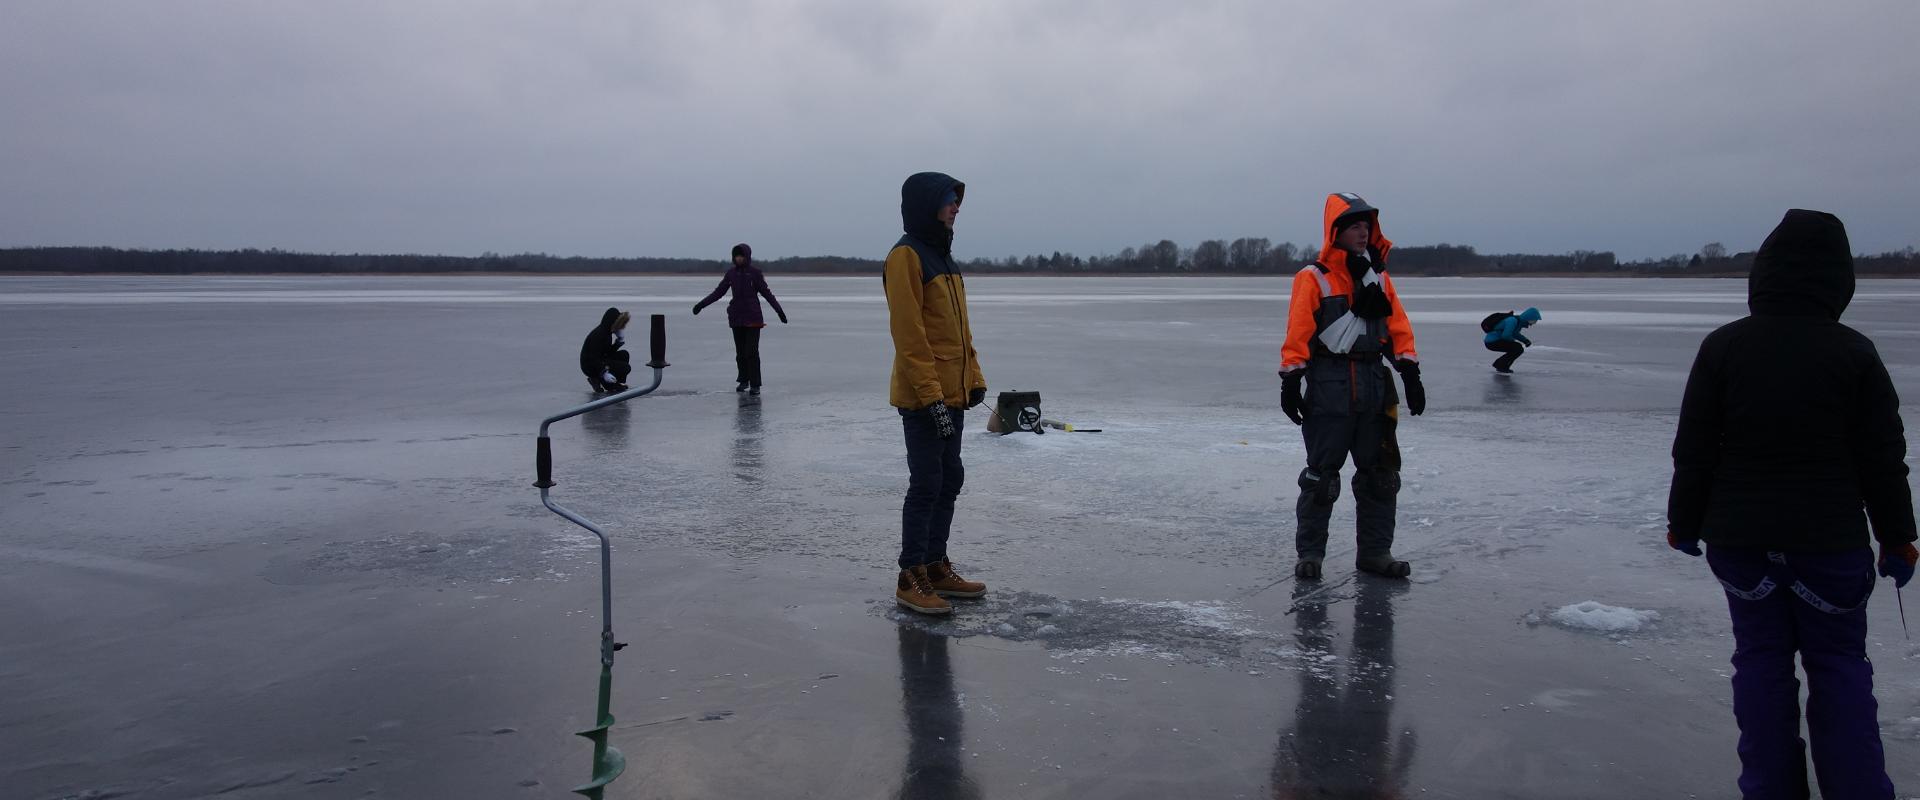 Zemledus makšķerēšana Vītnas ezerā, brauciens no Tallinas